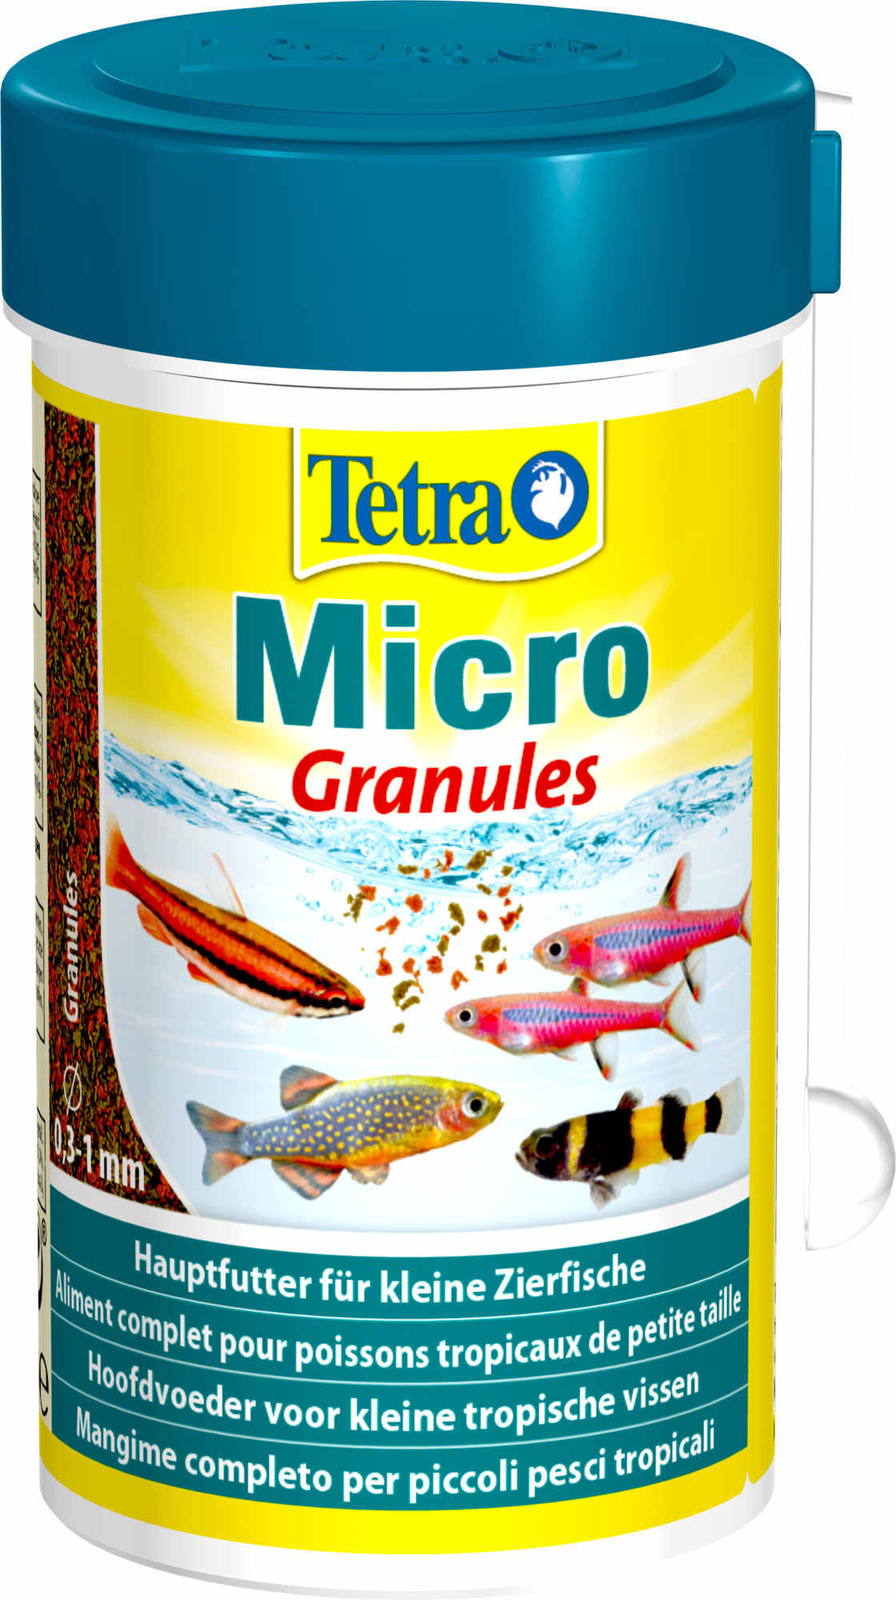 Tetra (корма) Tetra (корма) корм для всех видов мелких рыб, микрогранулы (45 г) tetra корма tetra корма корм для всех видов мелких рыб четыре вида корма 65 г